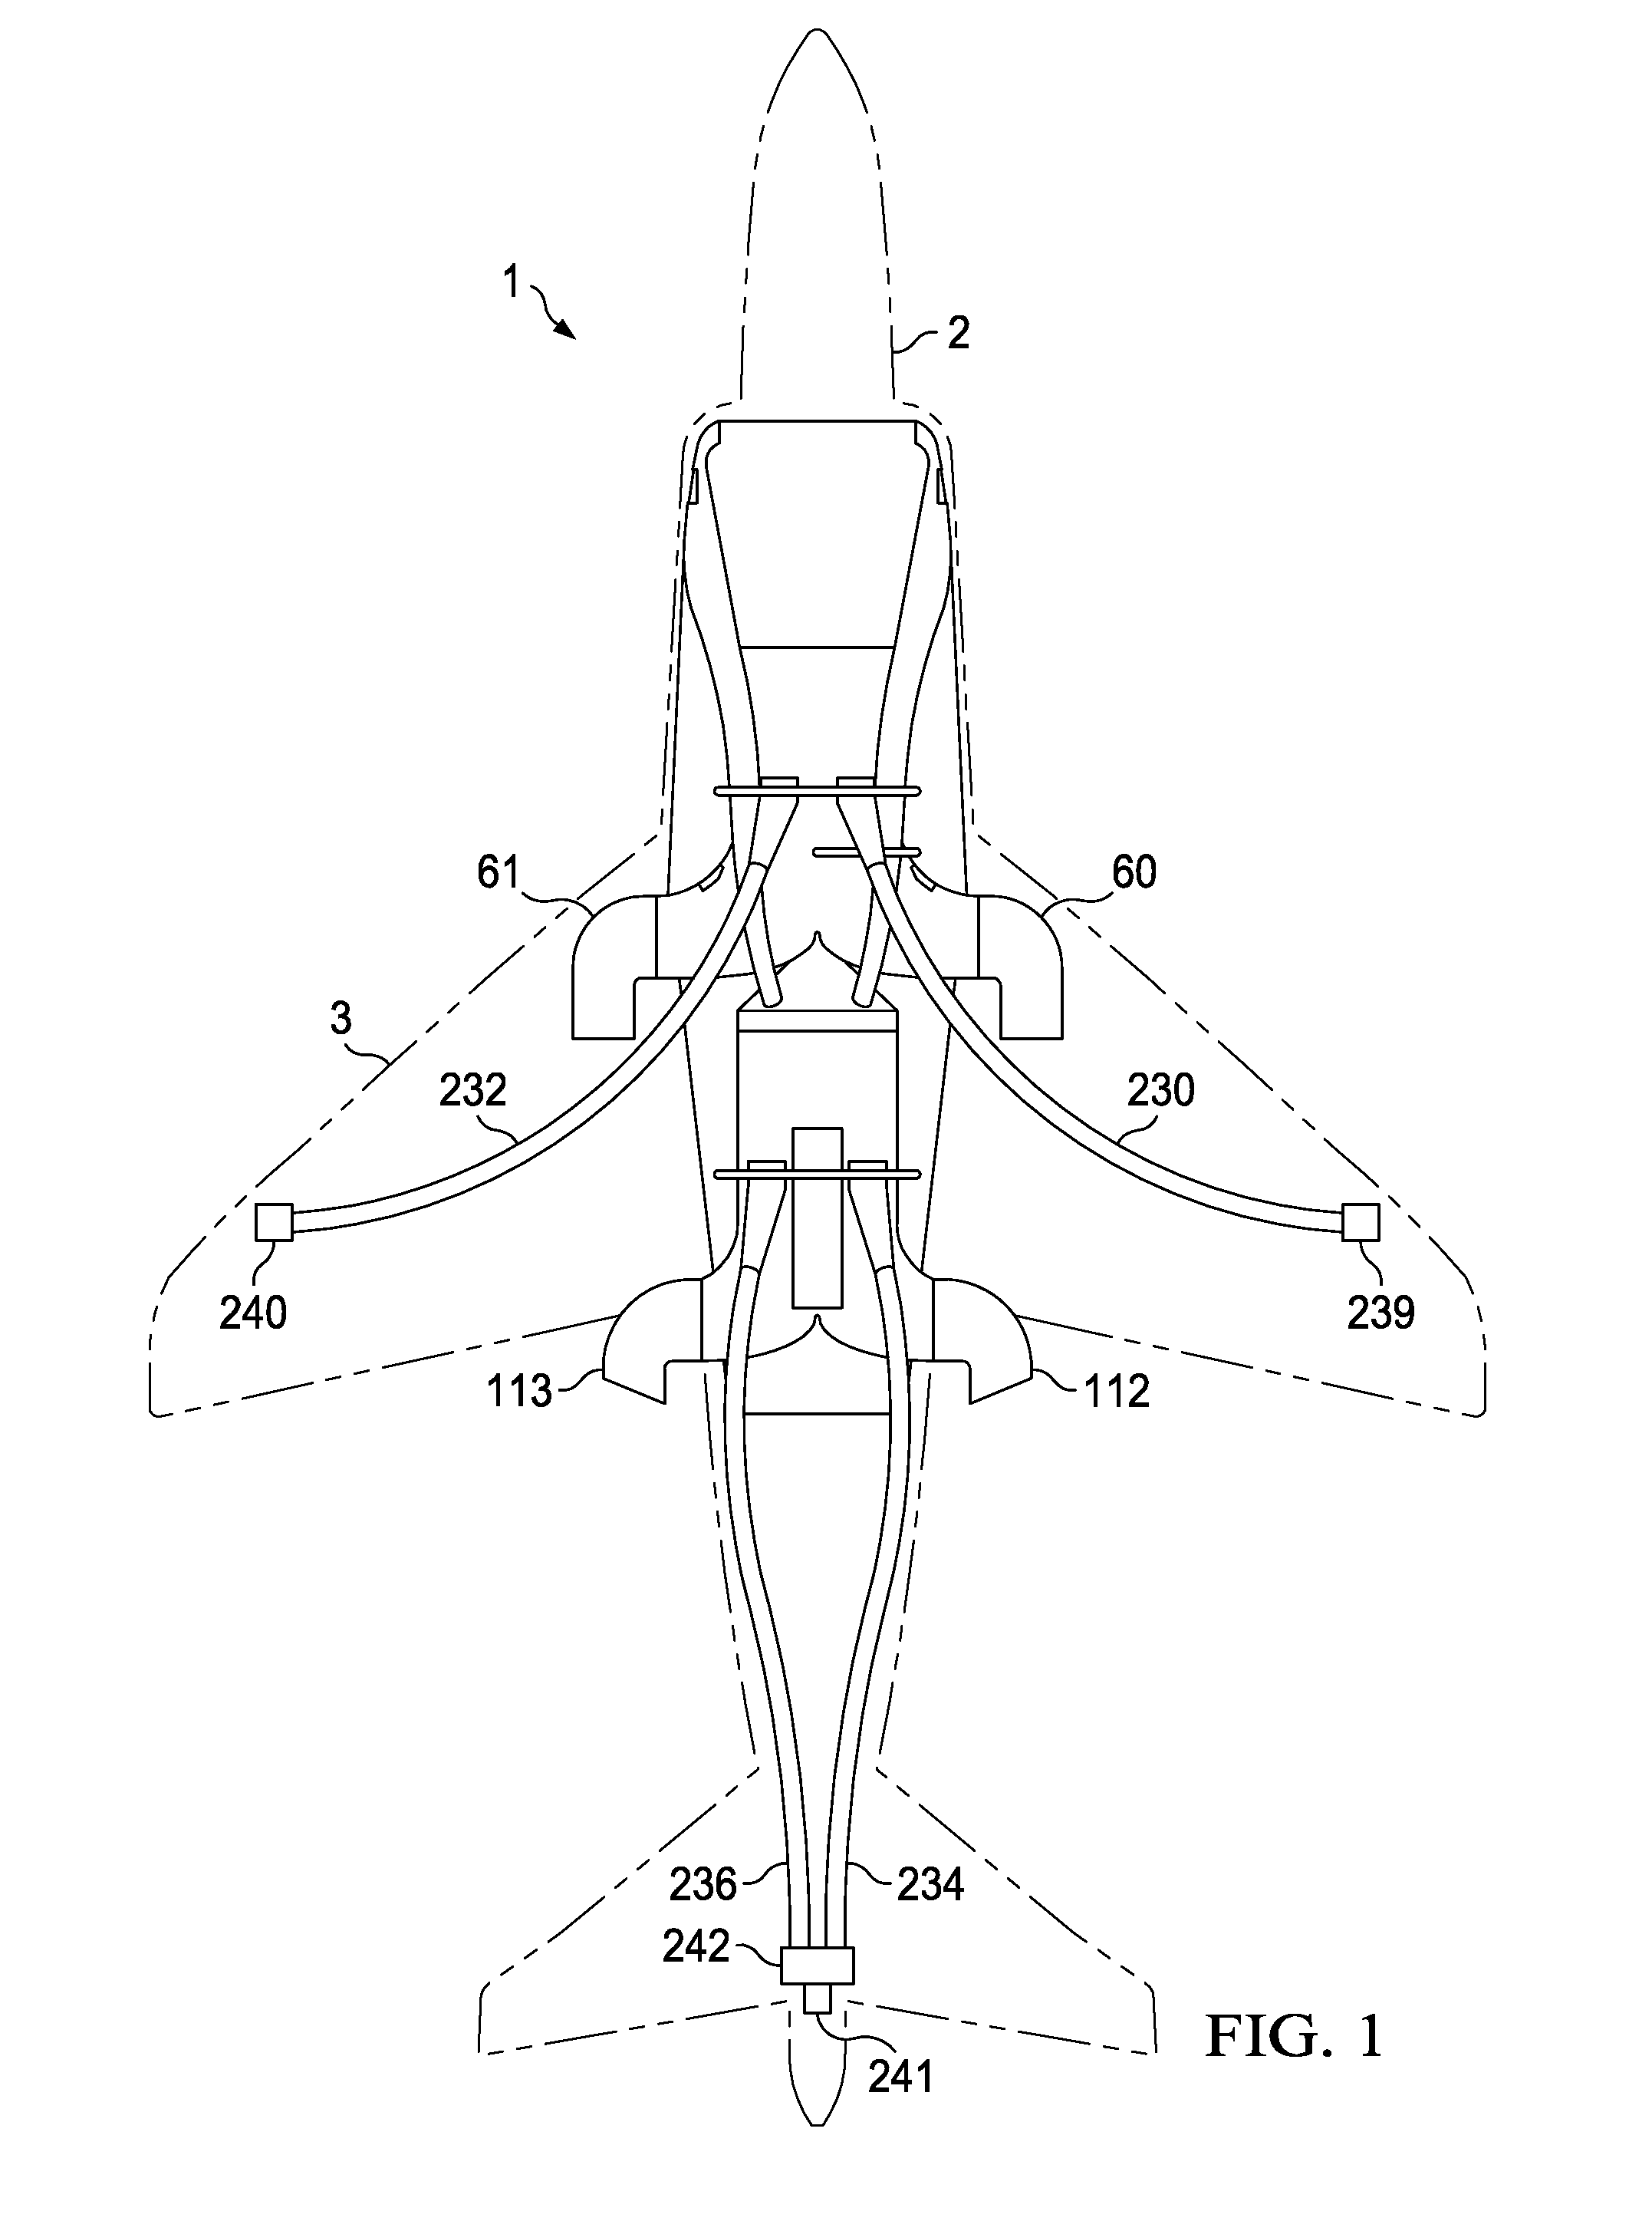 VTOL propulsion for aircraft